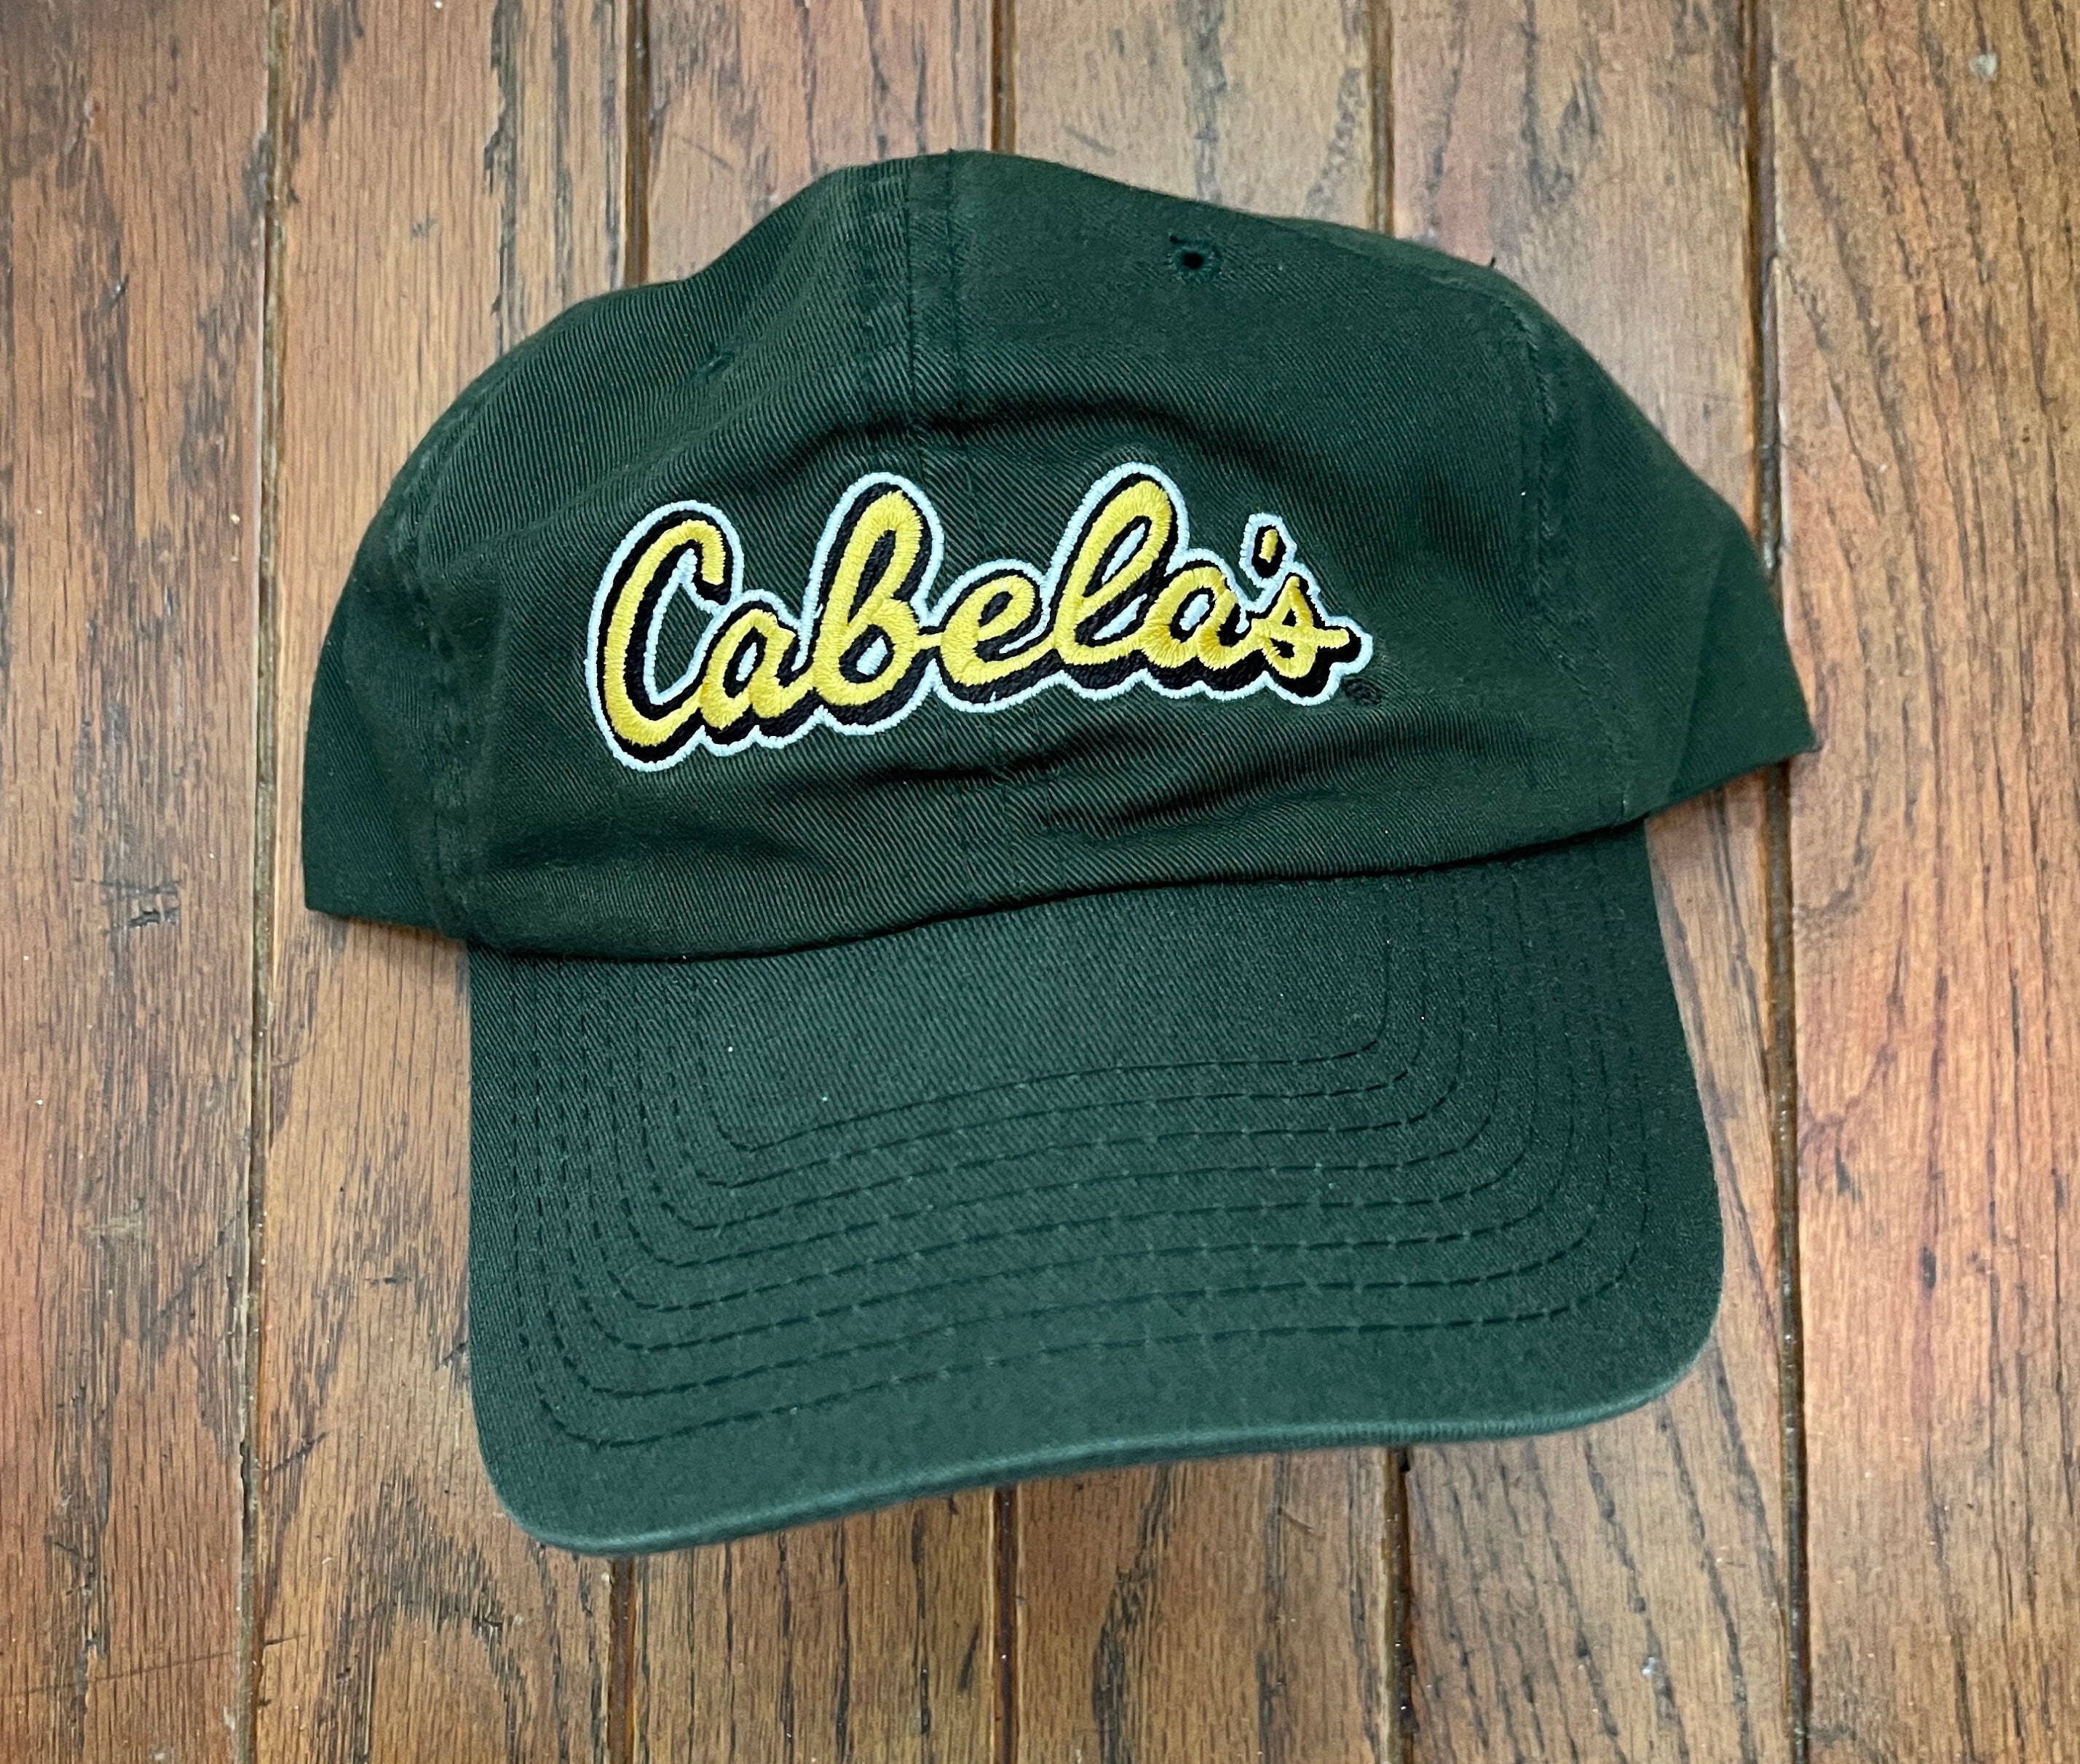 Vintage 90s Unstructured Strapback Hat Baseball Cap Cabela's